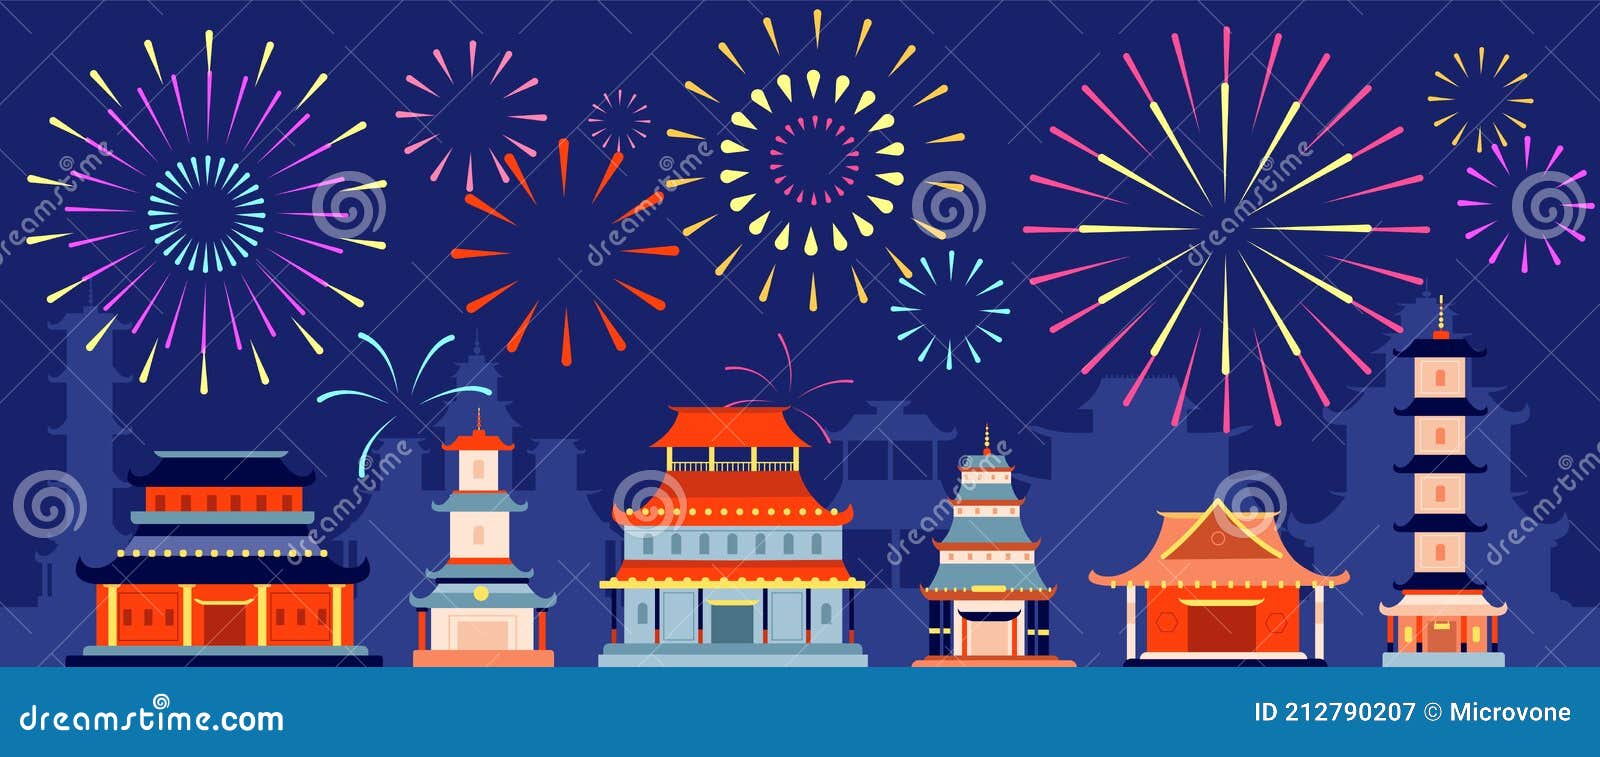 Japanese Festival Firework. Japan Festive Fireworks, Asian Summer Party  Event Stock Vector - Illustration of festival, background: 212790207